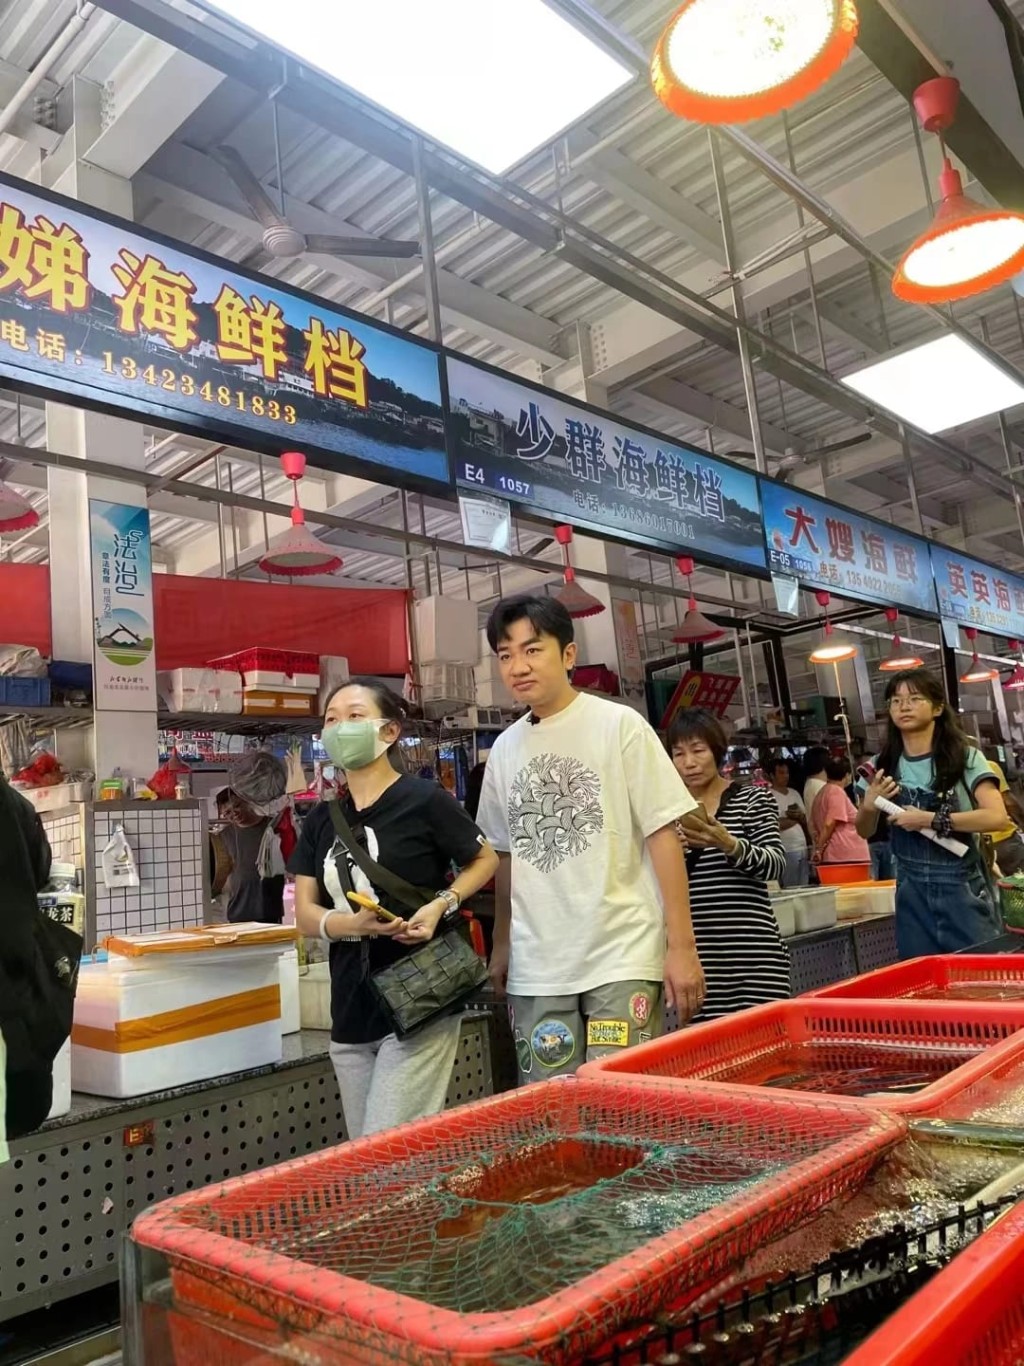 有現場網民爆料王祖藍來東莞拍攝是為宣傳虎門海鮮。